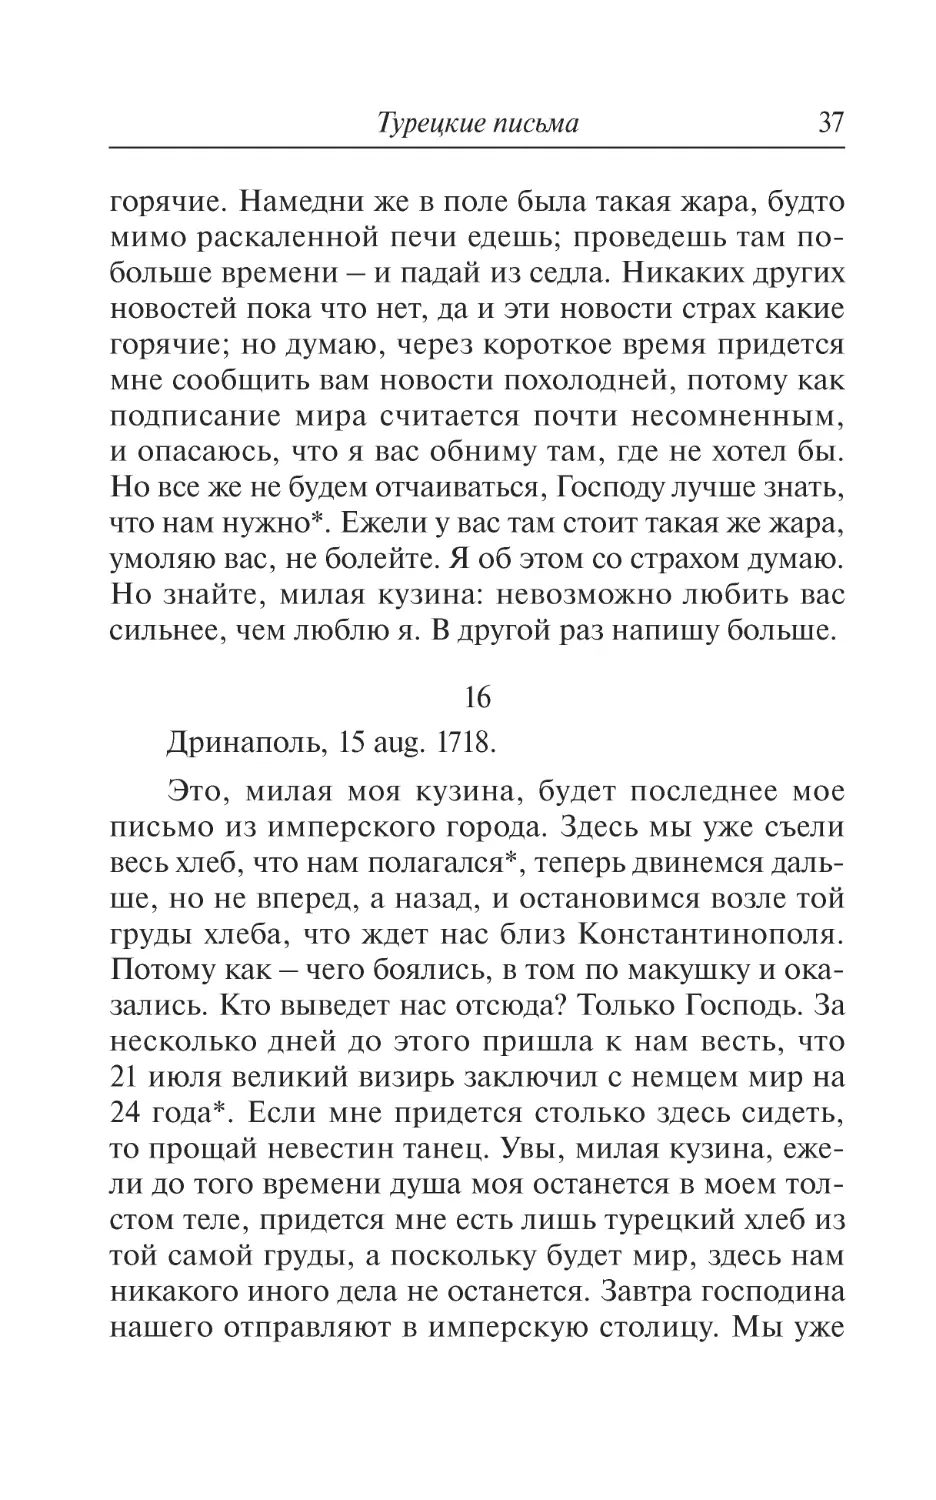 16. Дринаполь, 15 aug. 1718